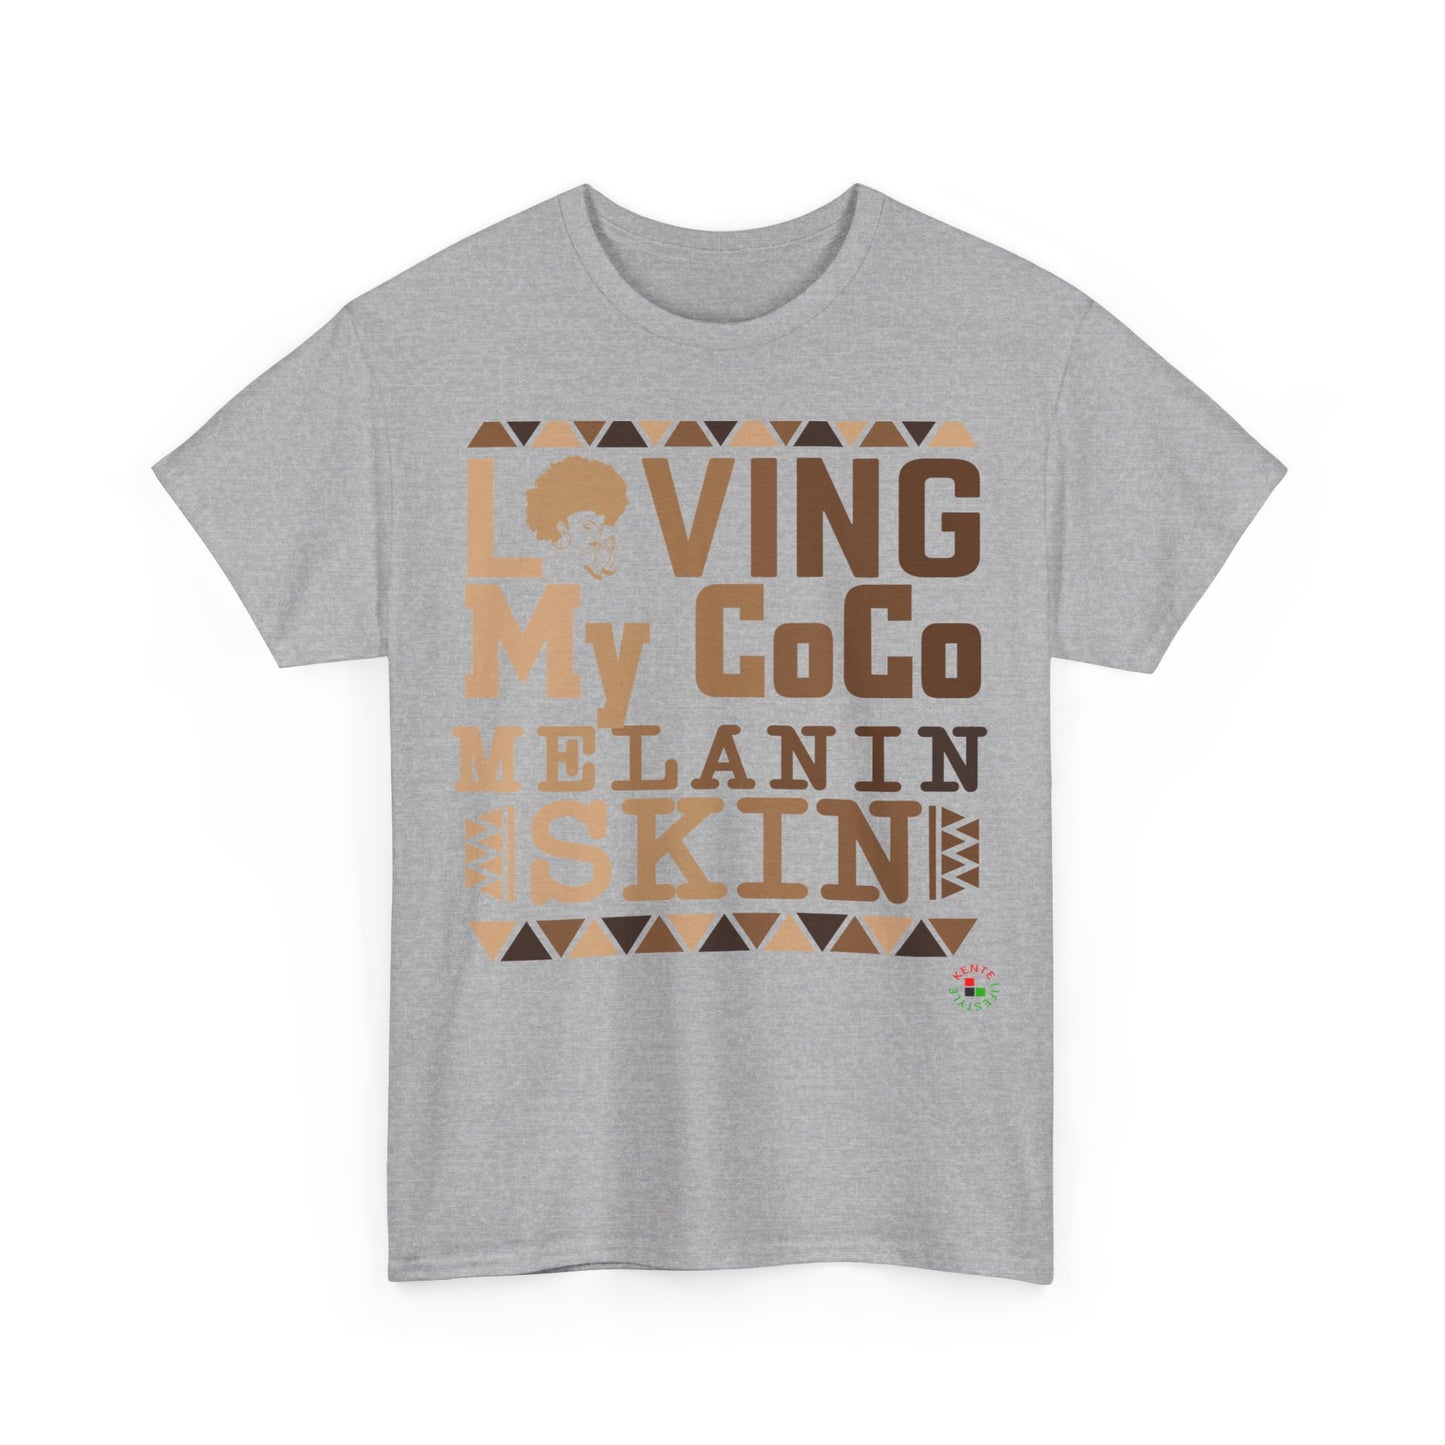 Loving My CoCo Melanin Skin - T-shirt